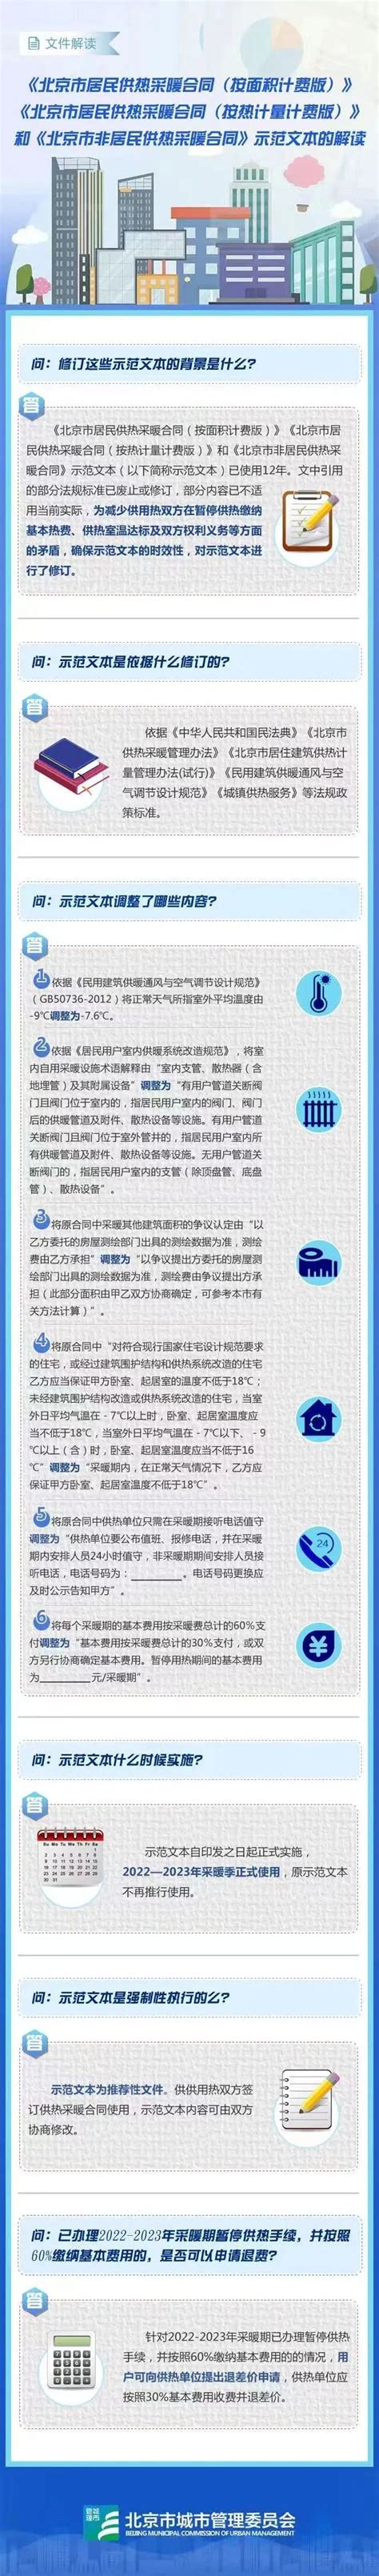 2022年起北京供暖可申请暂时停暖+室温新要求- 北京本地宝